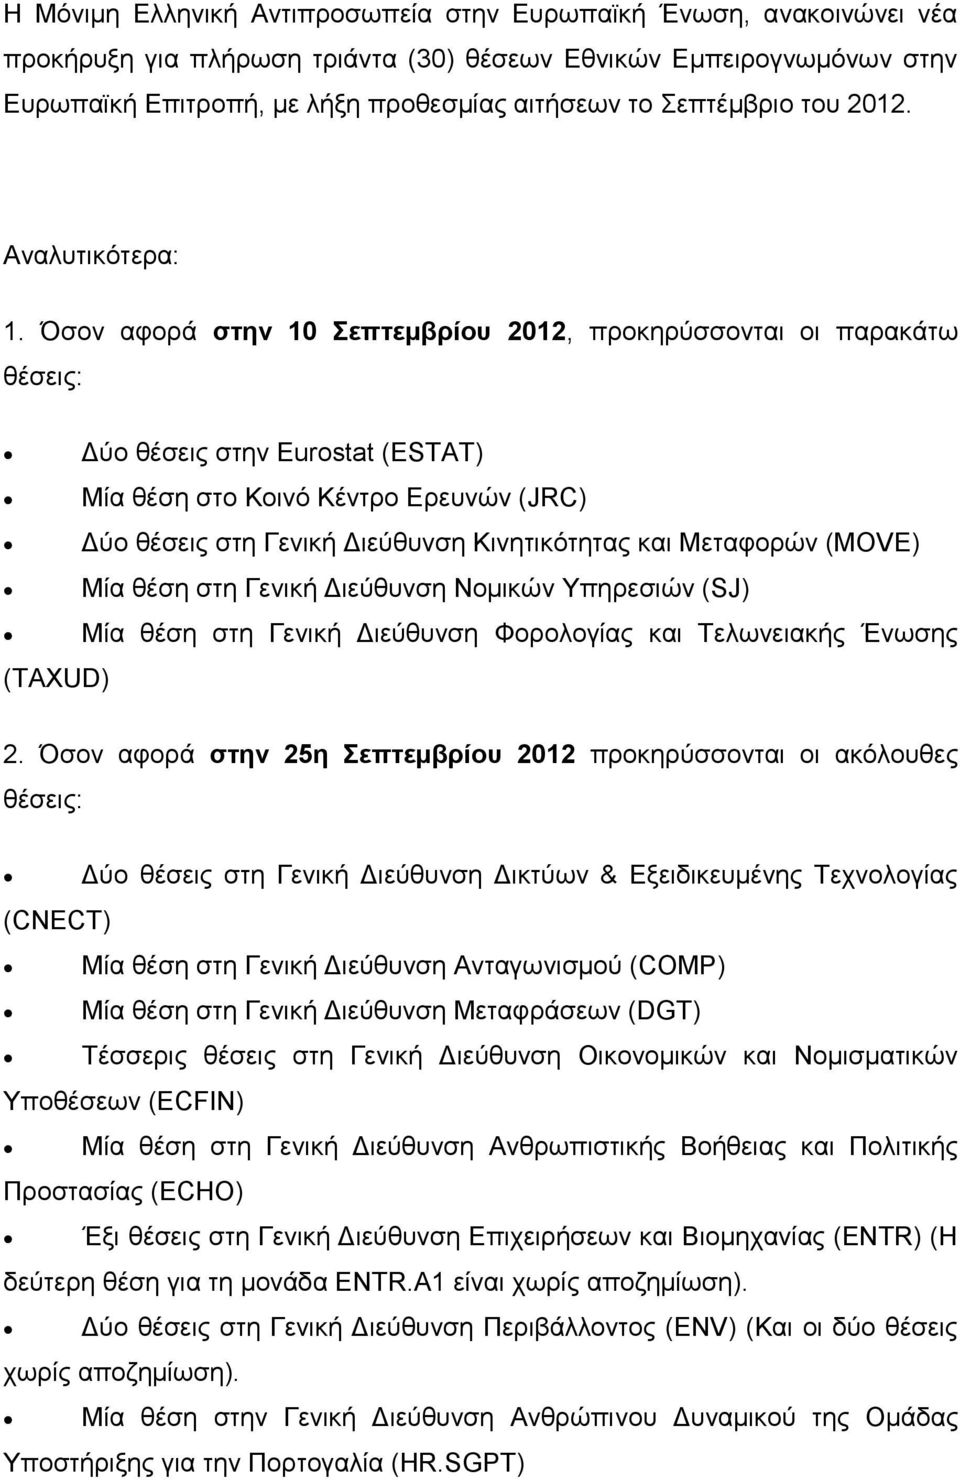 Όσον αφορά στην 10 Σεπτεμβρίου 2012, προκηρύσσονται οι παρακάτω θέσεις: (TAXUD) Δύο θέσεις στην Eurostat (ESTAT) Μία θέση στο Κοινό Κέντρο Ερευνών (JRC) Δύο θέσεις στη Γενική Διεύθυνση Κινητικότητας